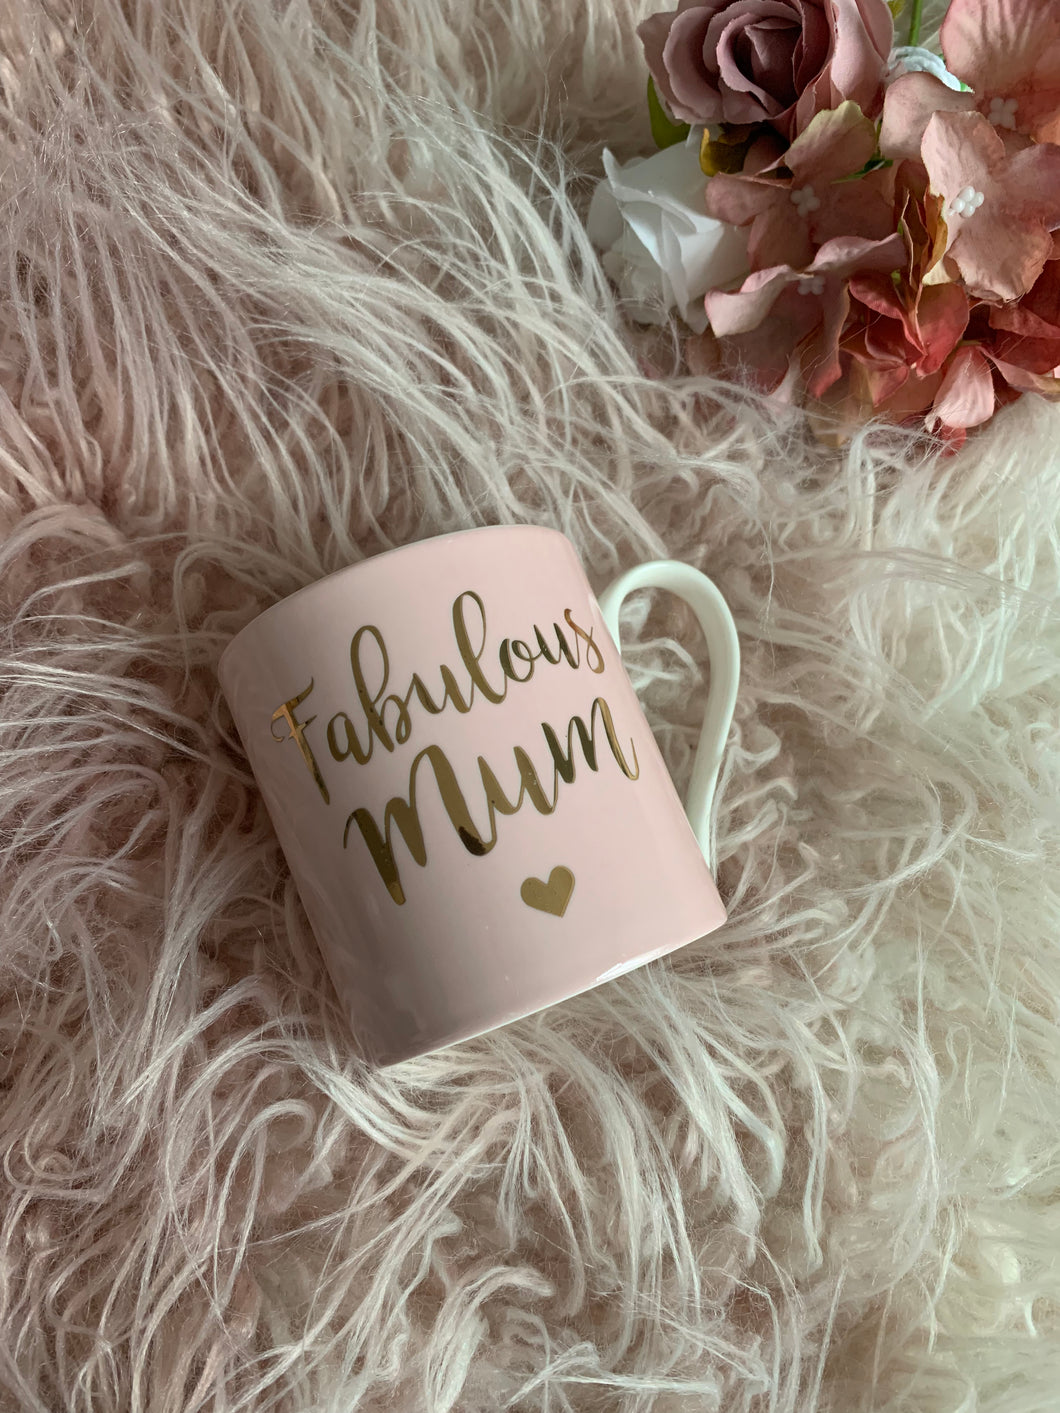 Fabulous mum mug